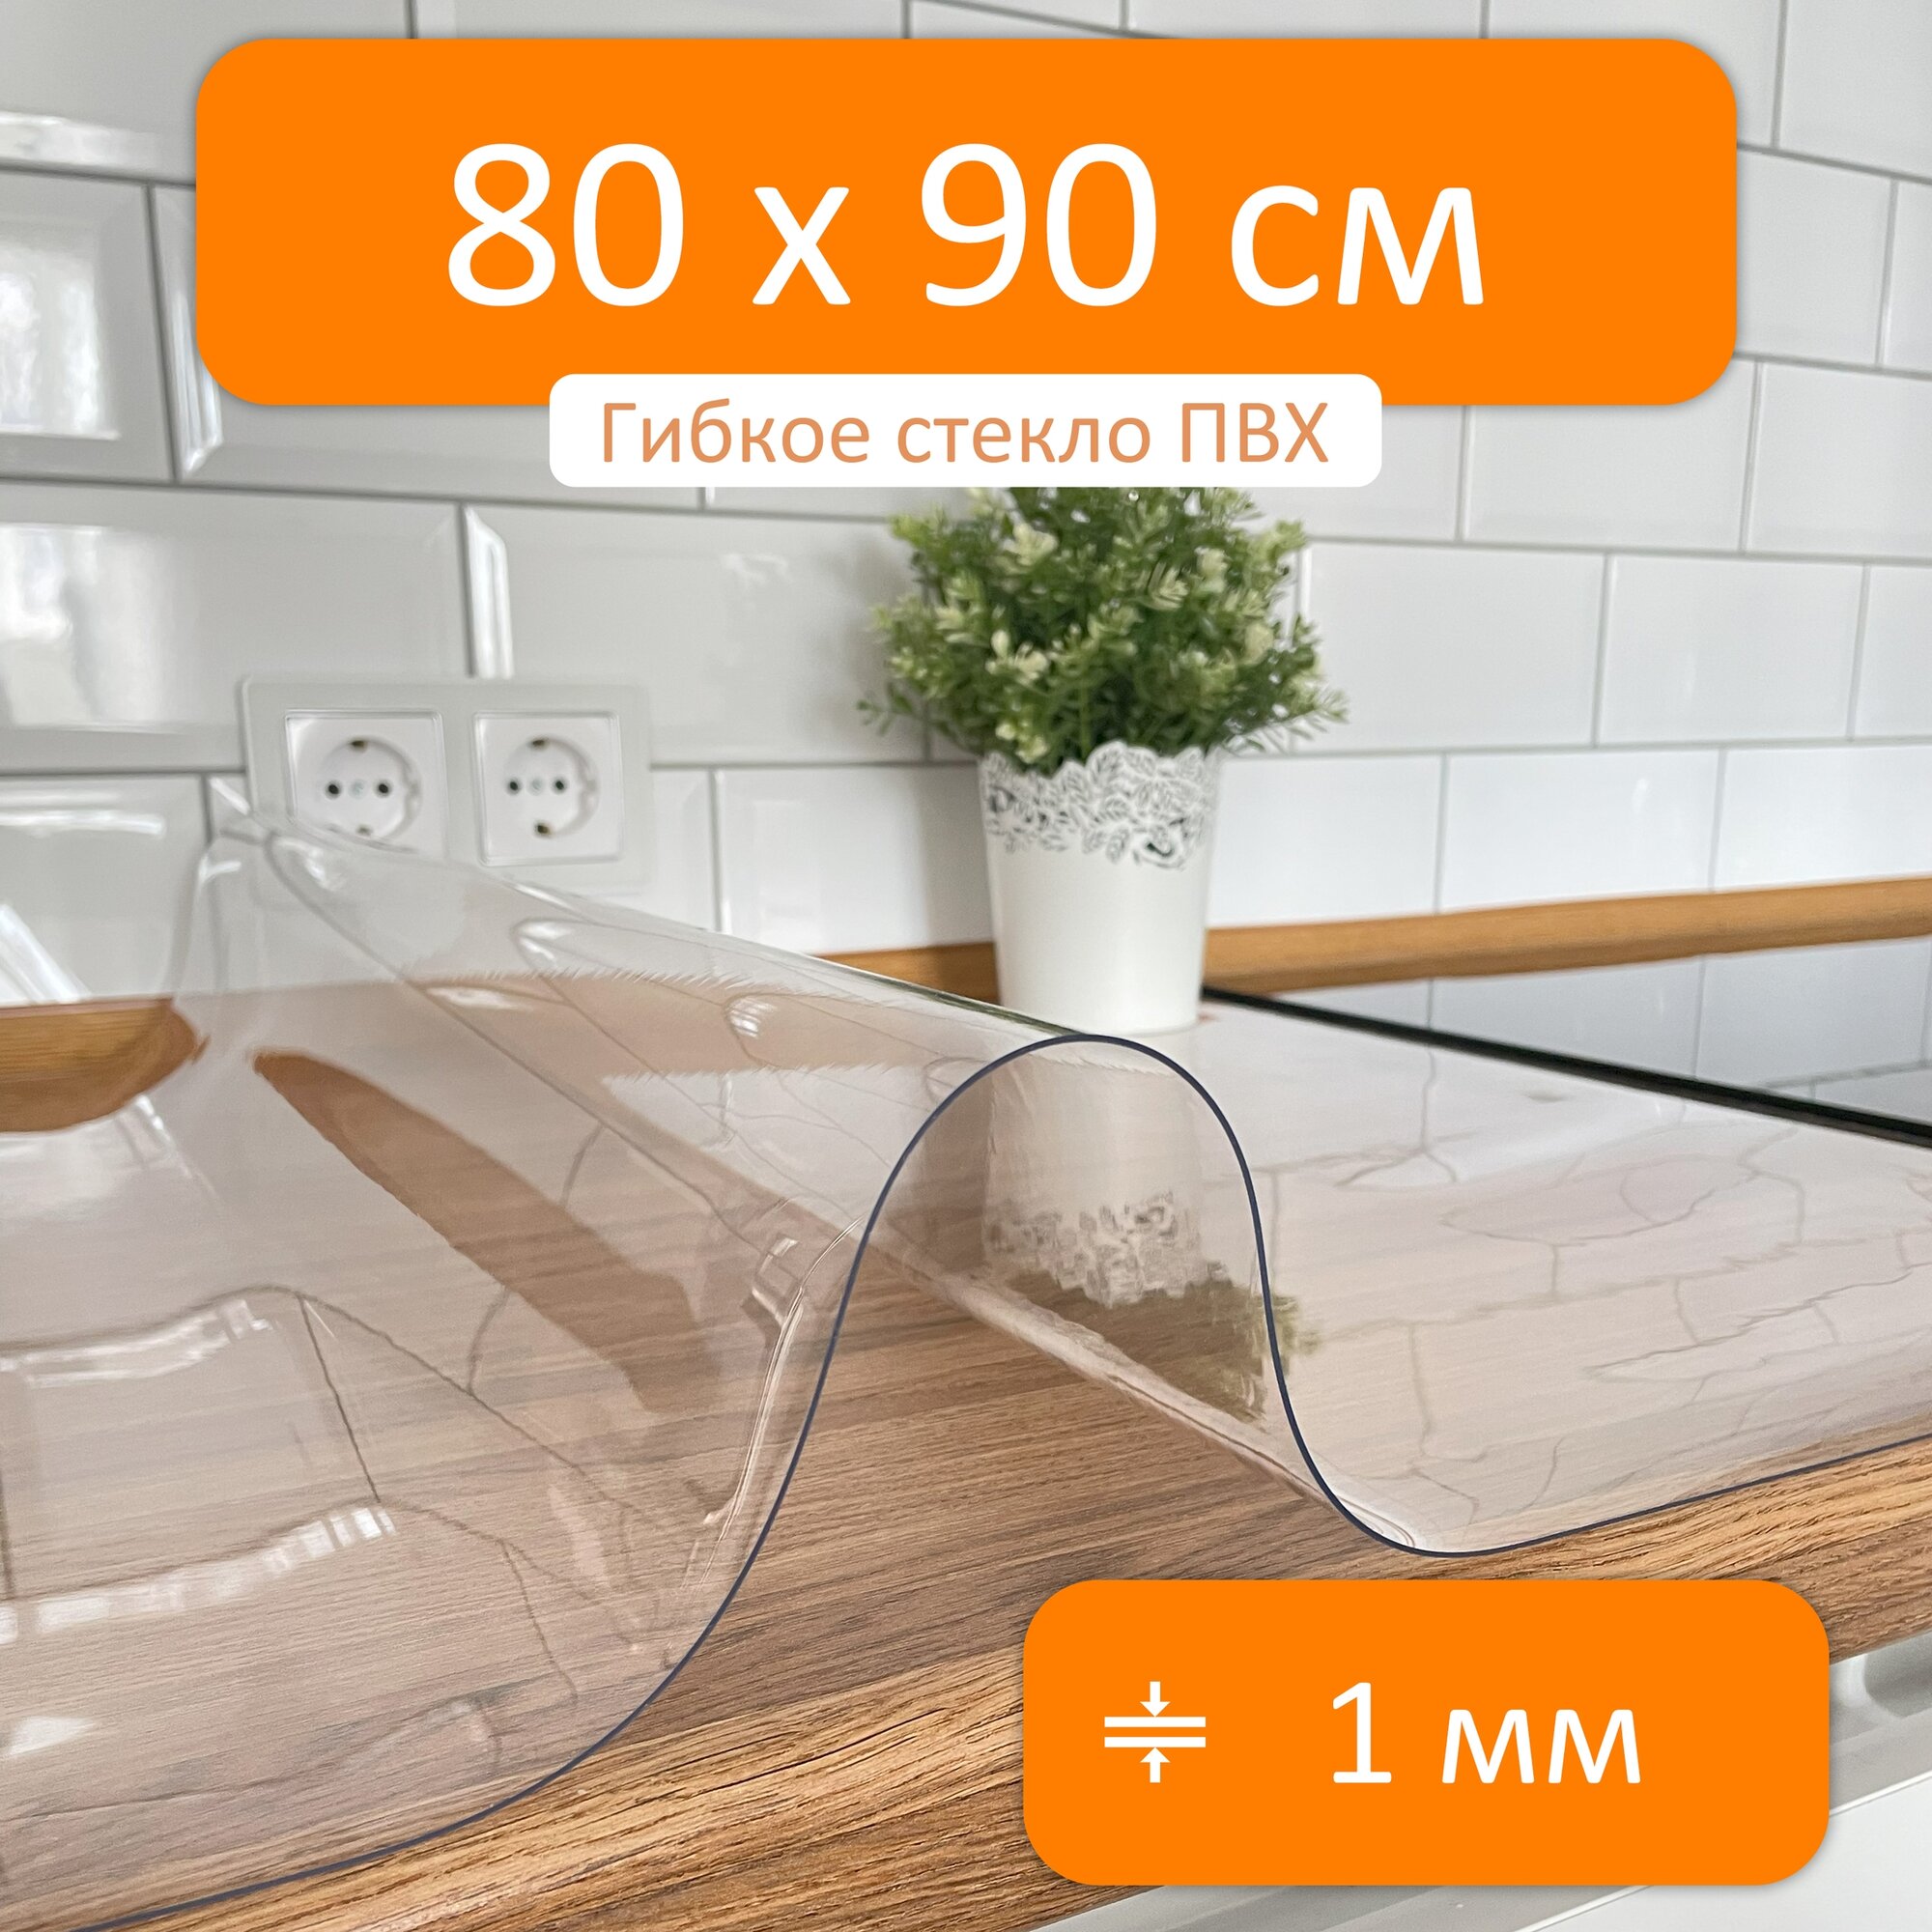 Скатерть прозрачная гибкое стекло 80x90 см, толщина 1 мм, силиконовая